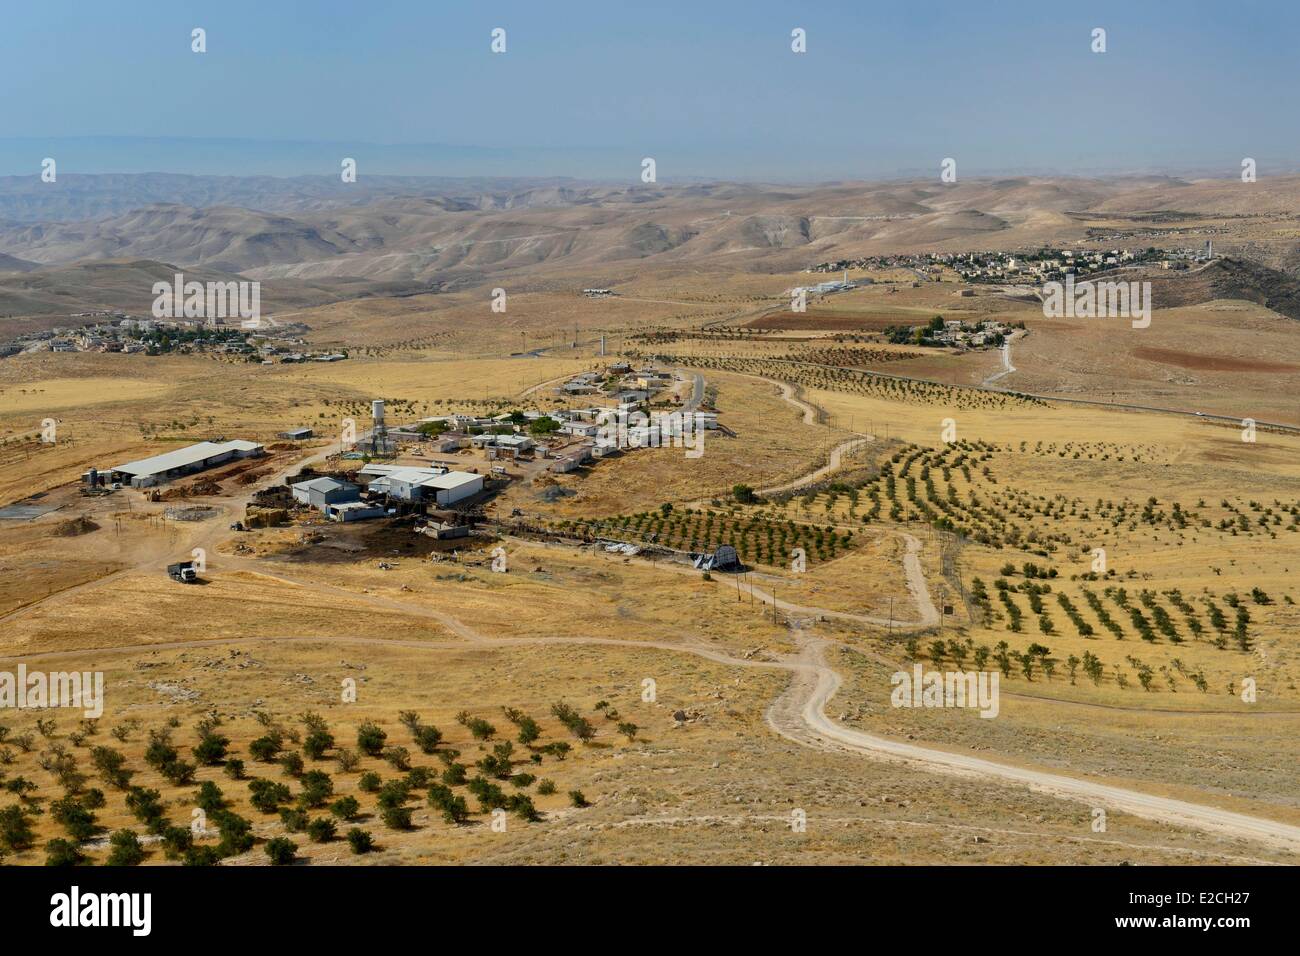 Palästina, West Bank (umstrittene Gebiet), Bethlehem-Region, die israelische Siedlung und eine kommunale Siedlung Kfar Eldad mit Blick auf die Judäische Wüste Stockfoto